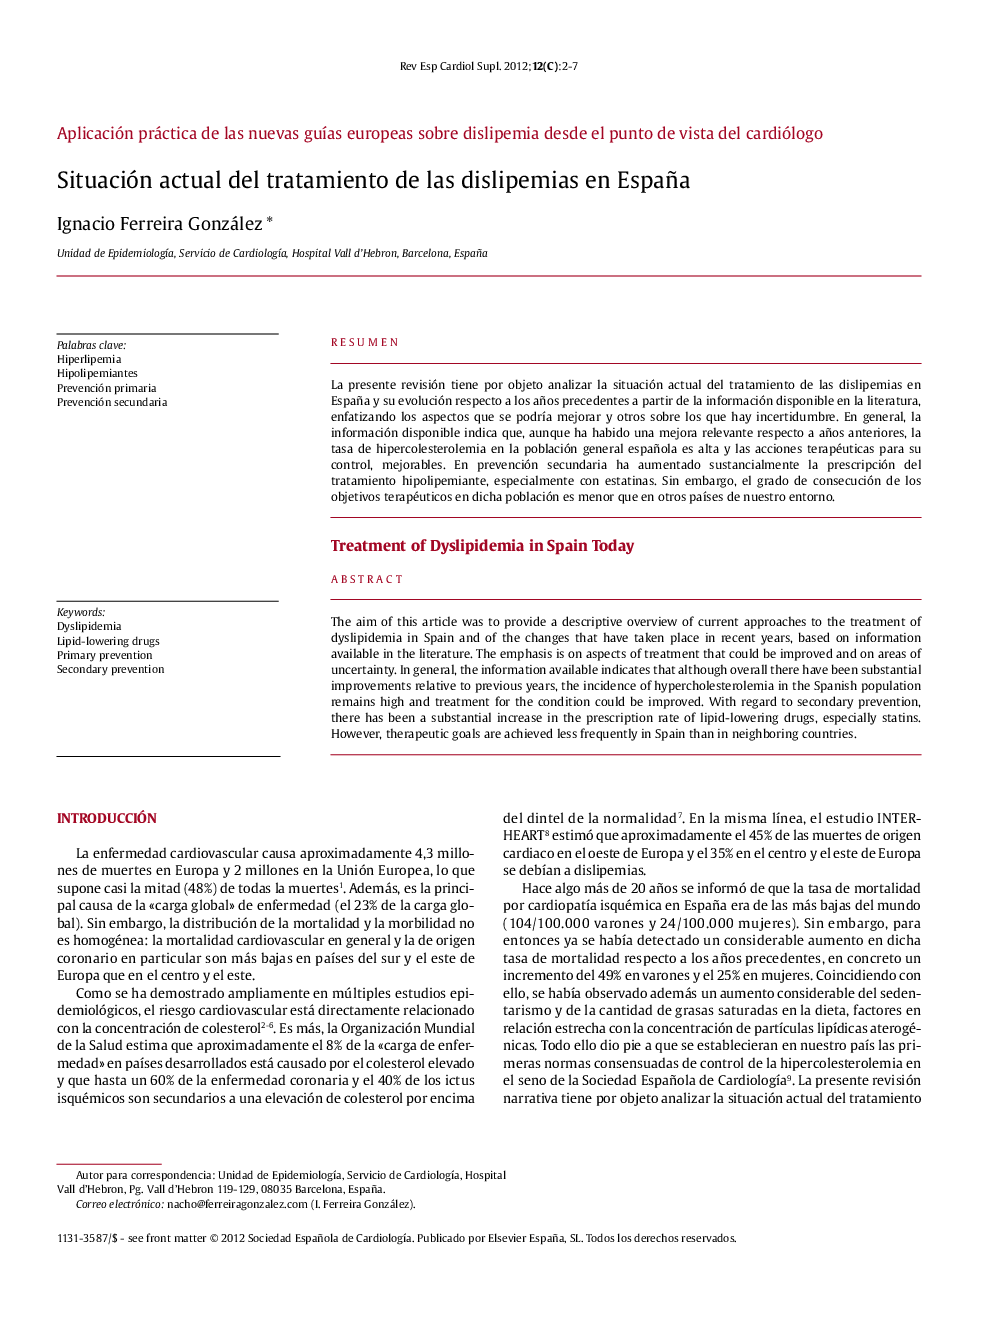 Situación actual del tratamiento de las dislipemias en España